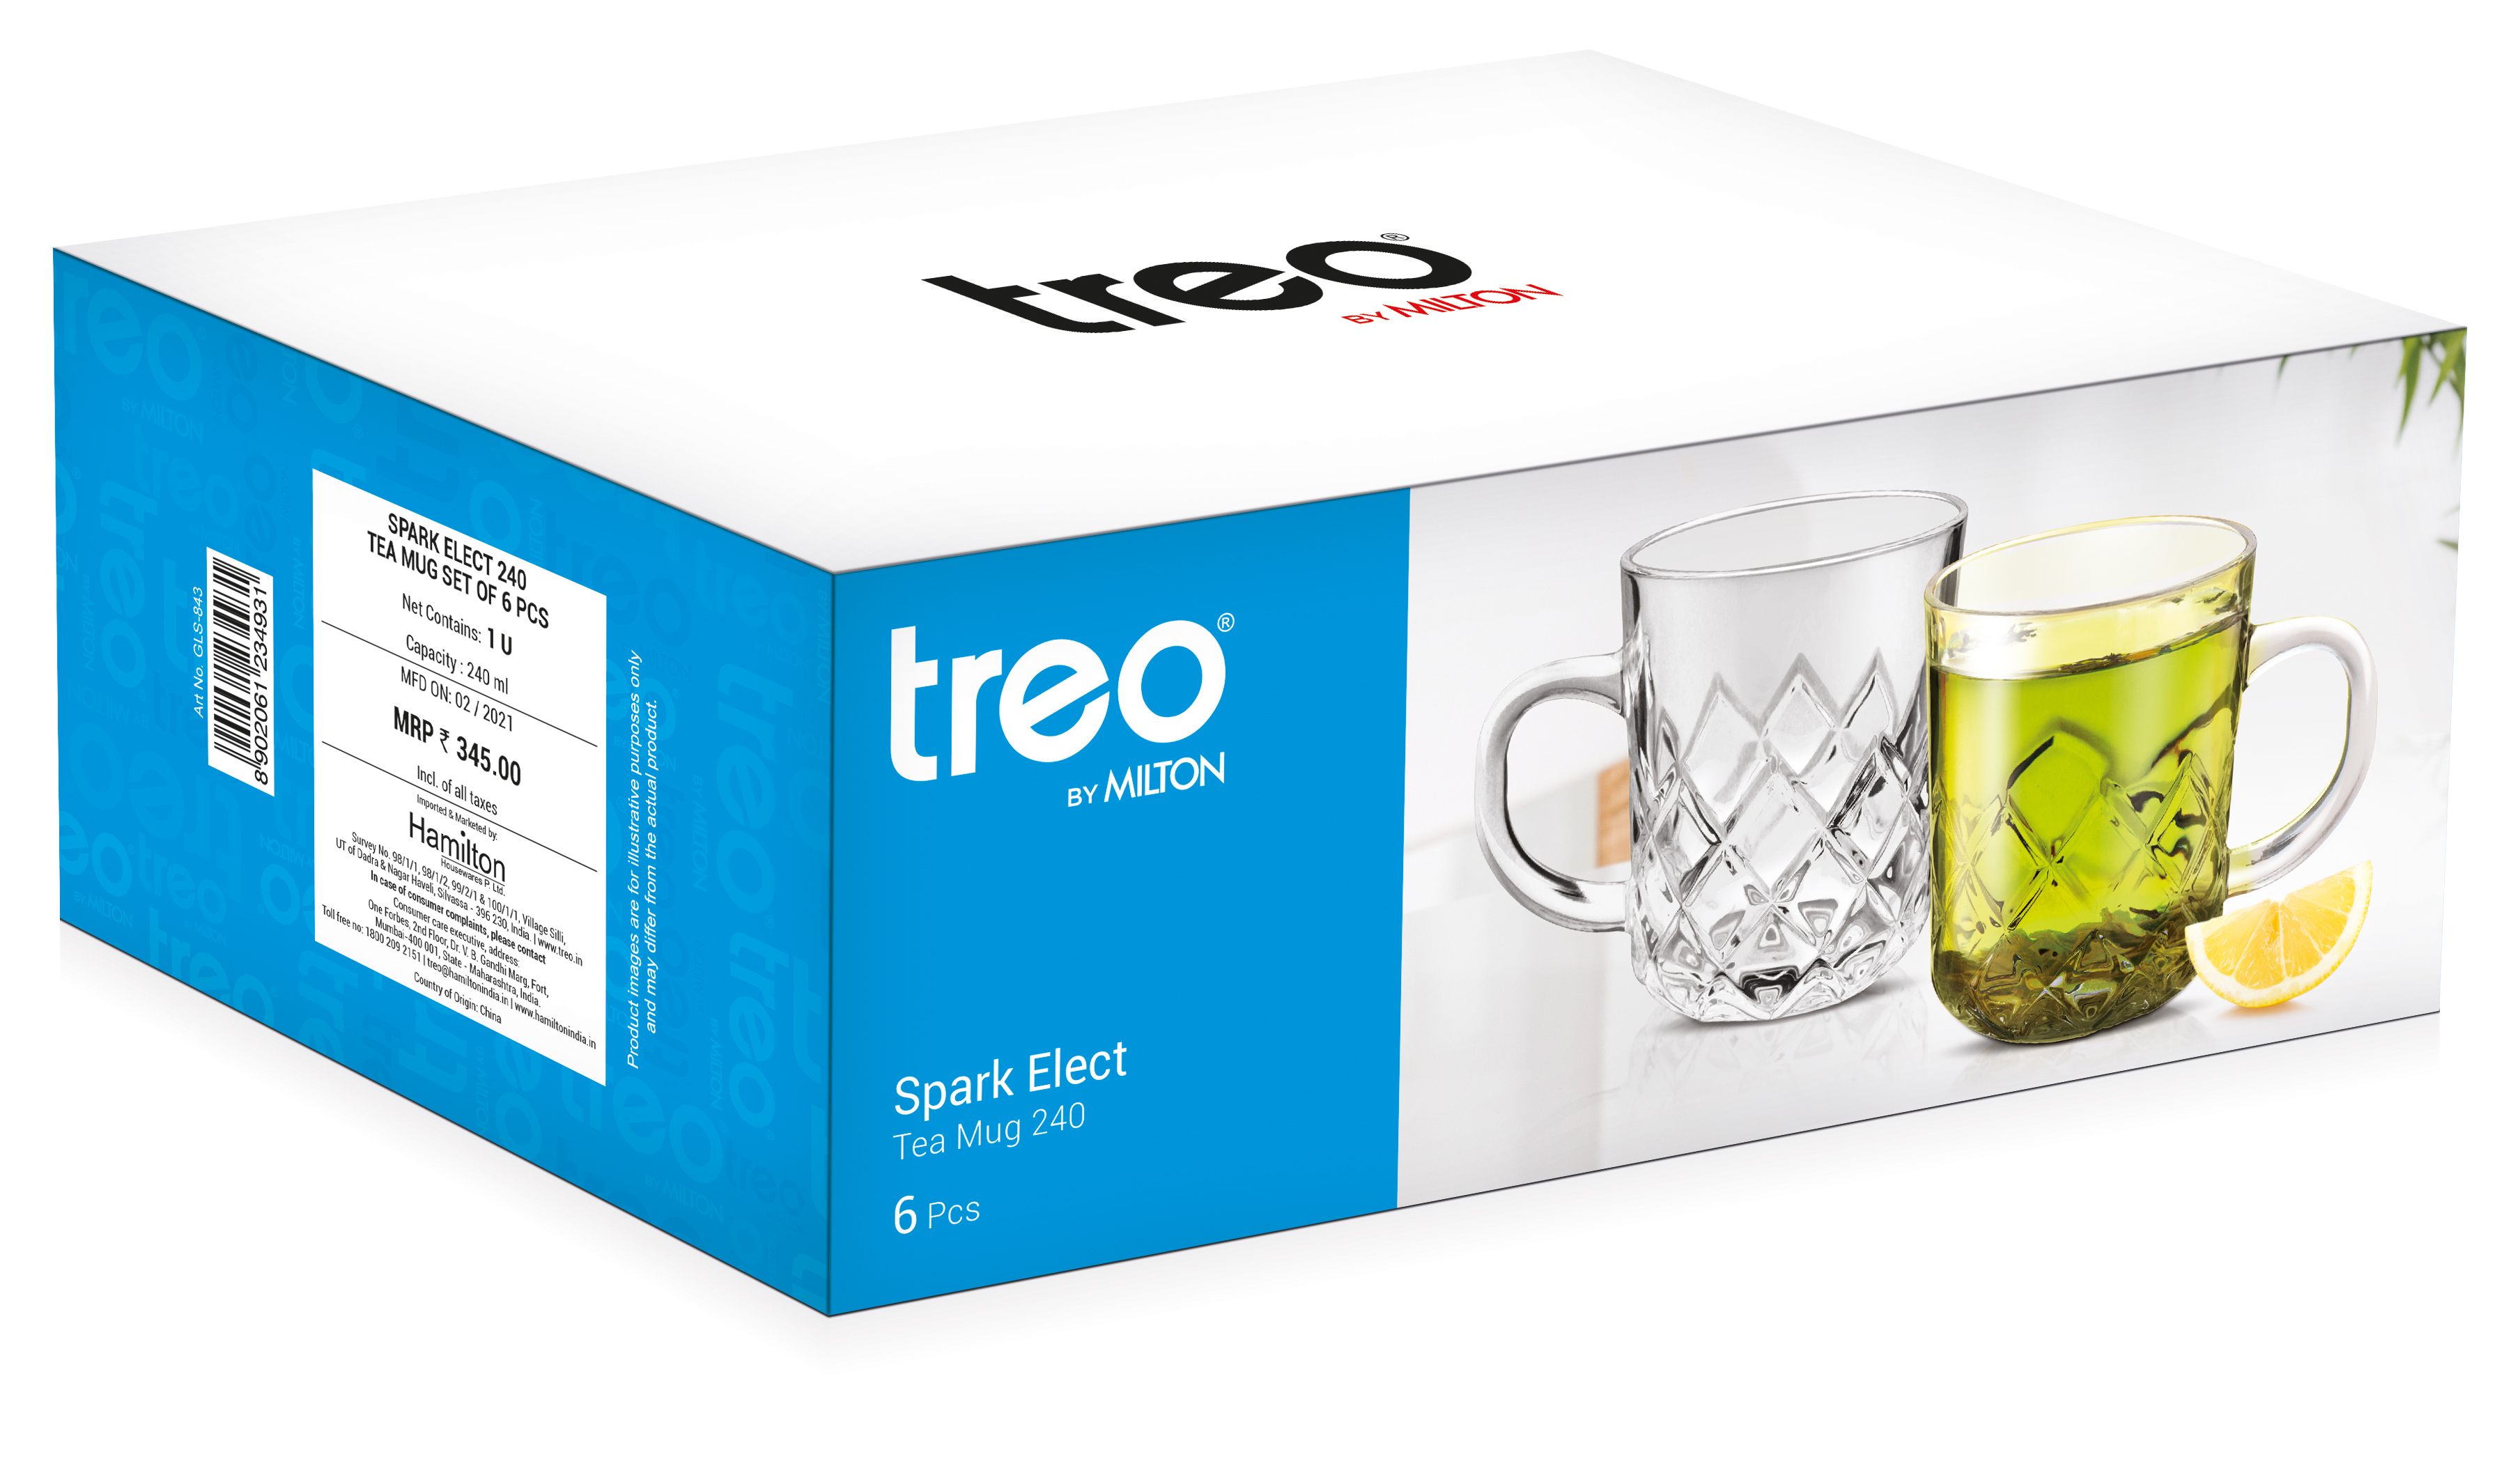 Treo Spark Elect Glass Tea Cup